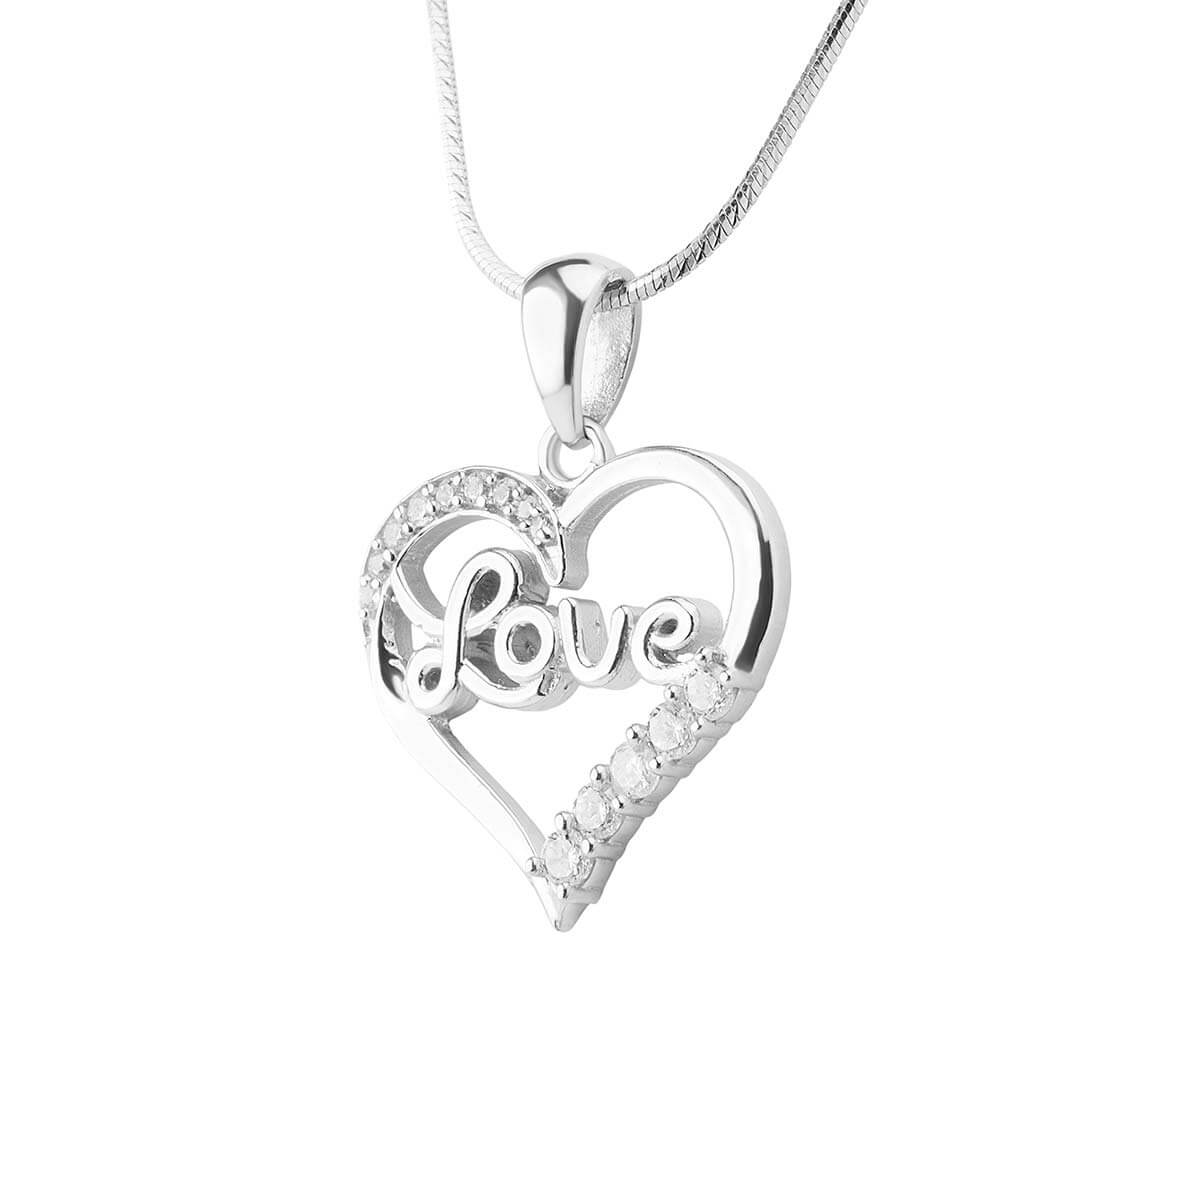 In Love Silver Heart Pendant